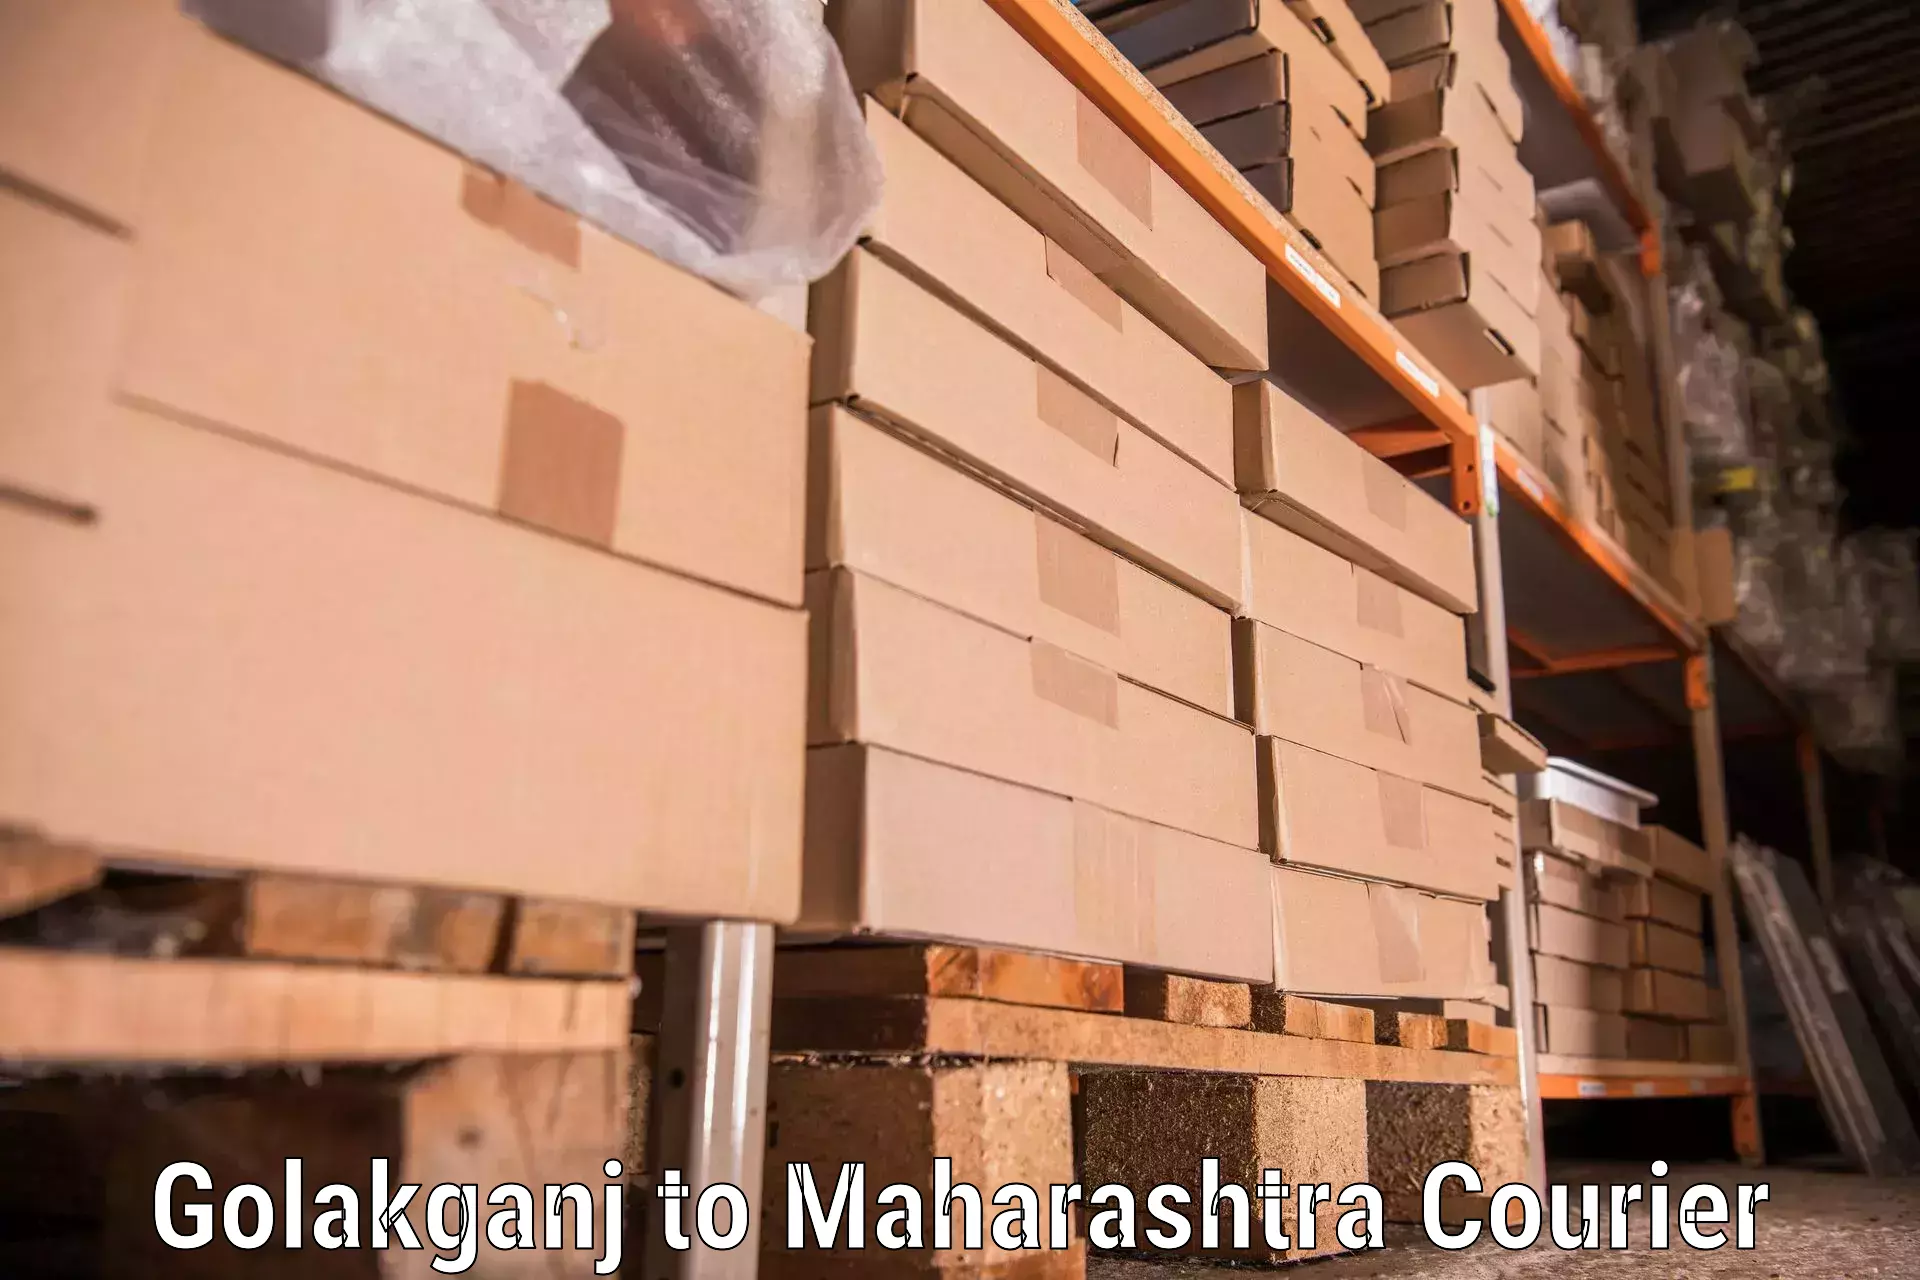 Budget-friendly movers Golakganj to Mahagaon